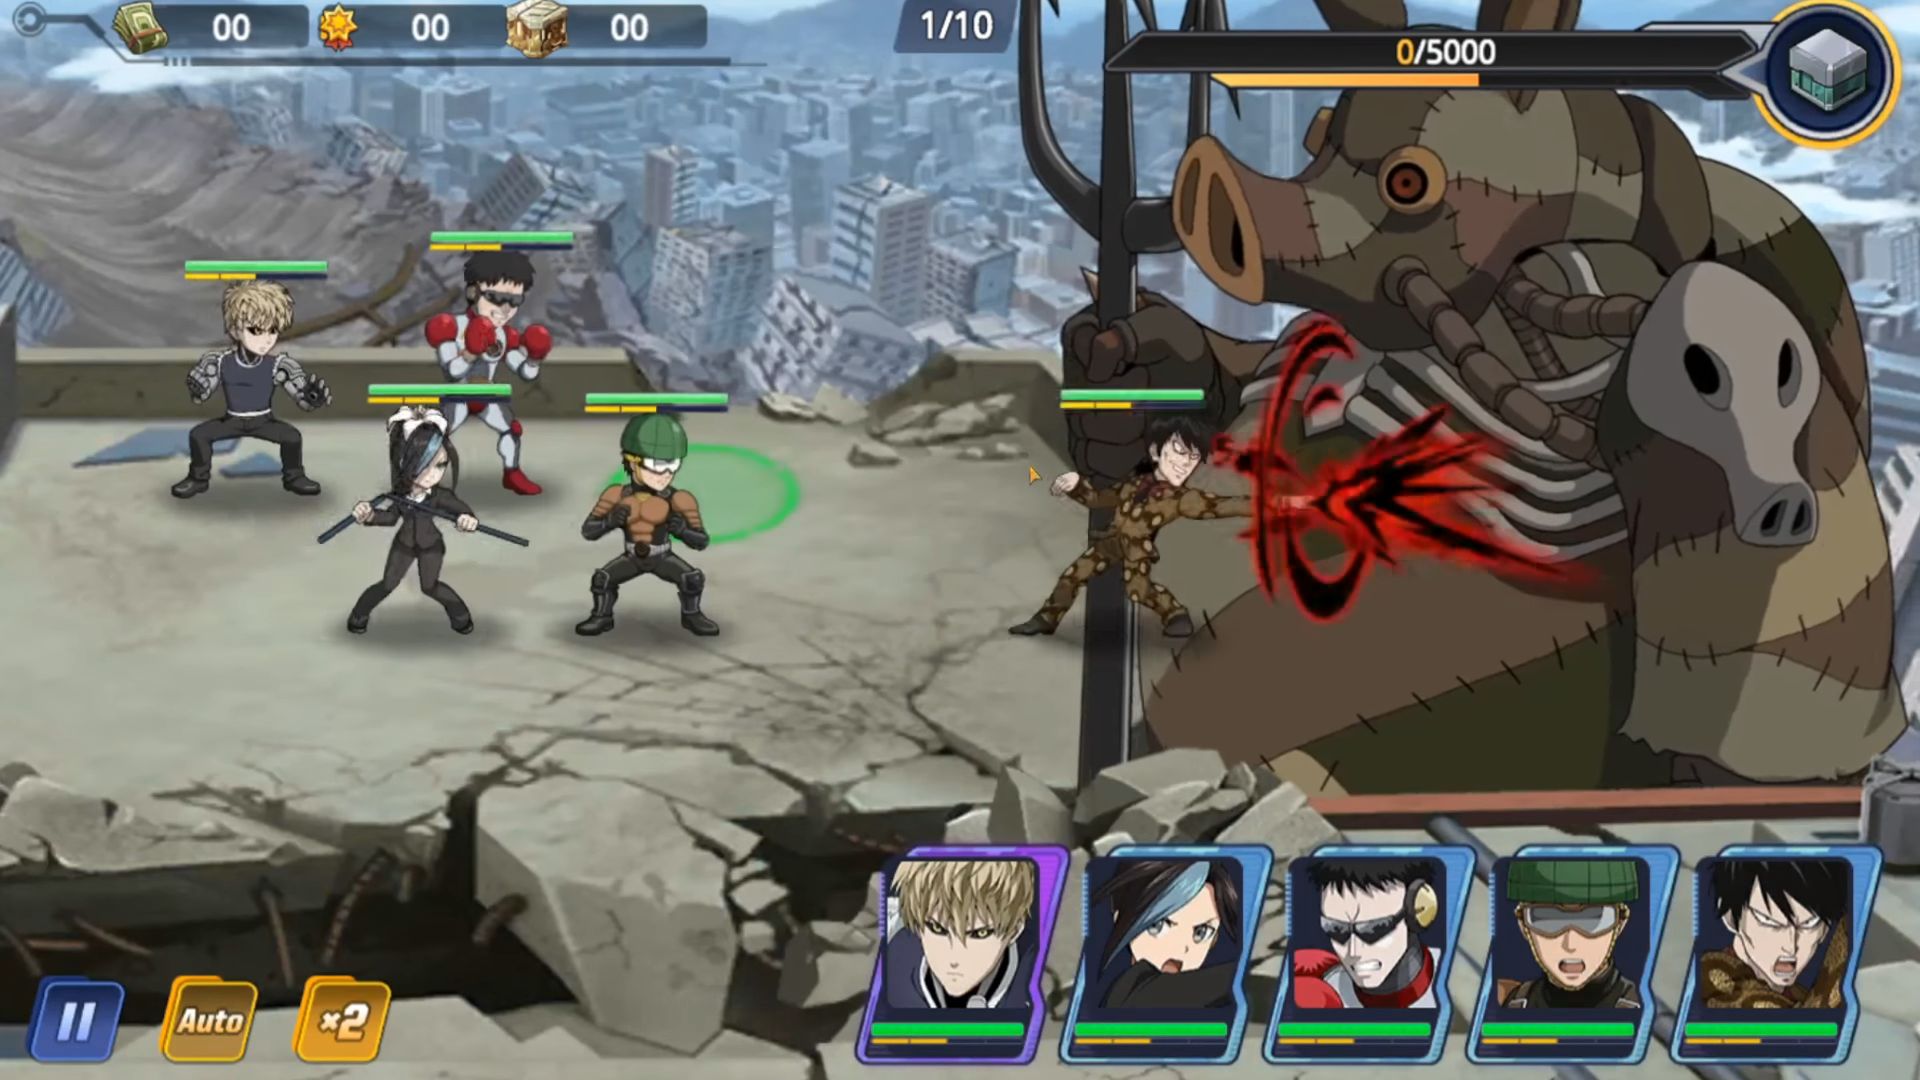 One Punch Man - Road to Hero: Saitama é confirmado no game mobile